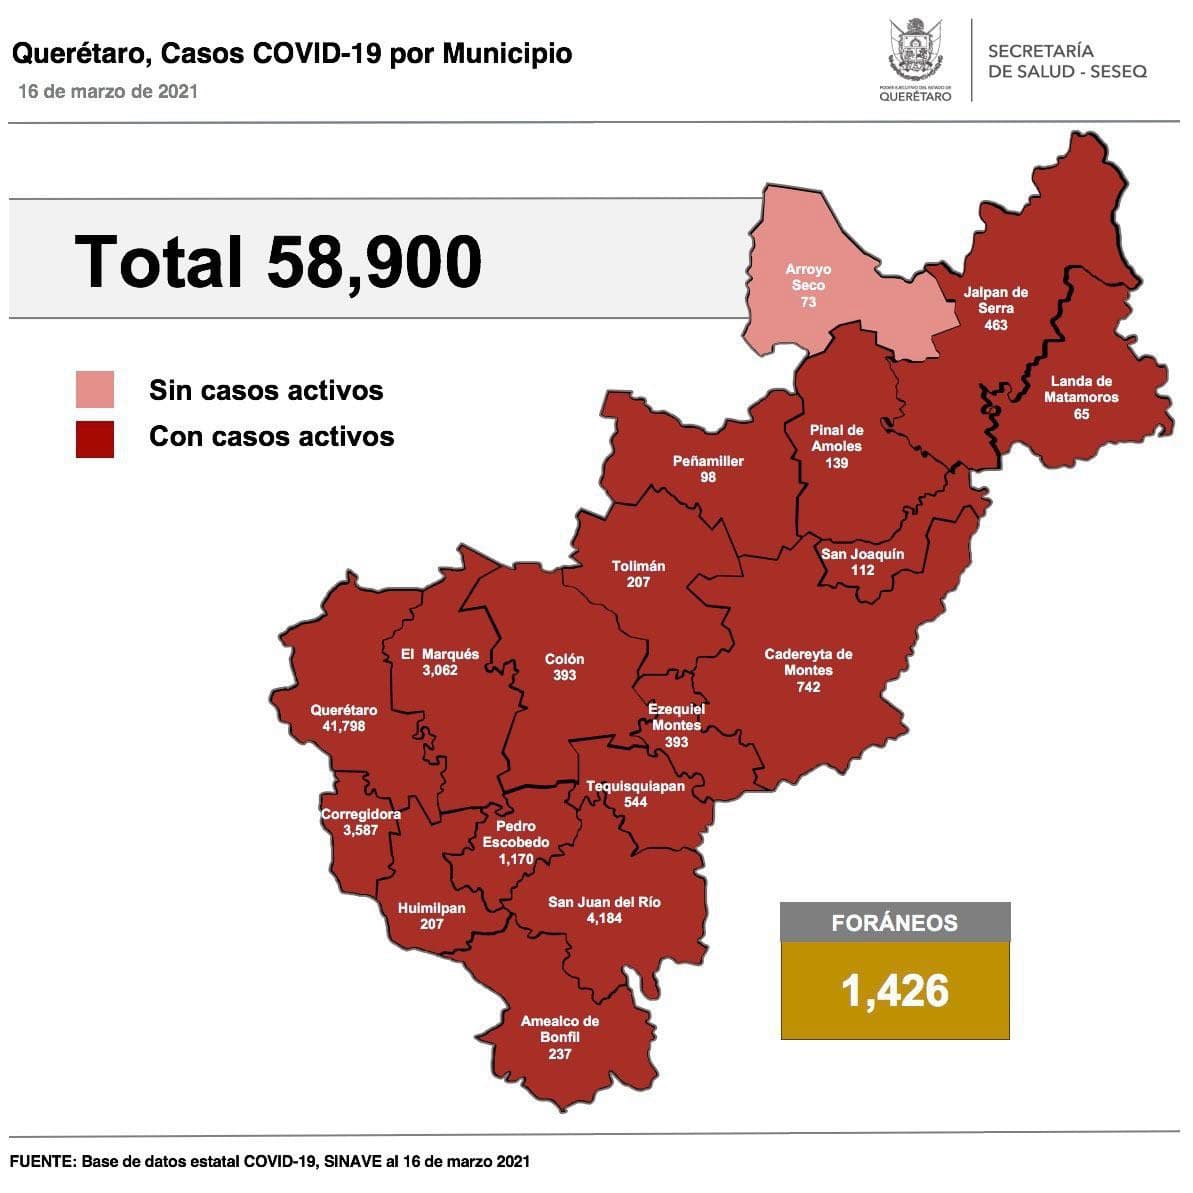 Querétaro con 58 mil 900 casos de COVID-19